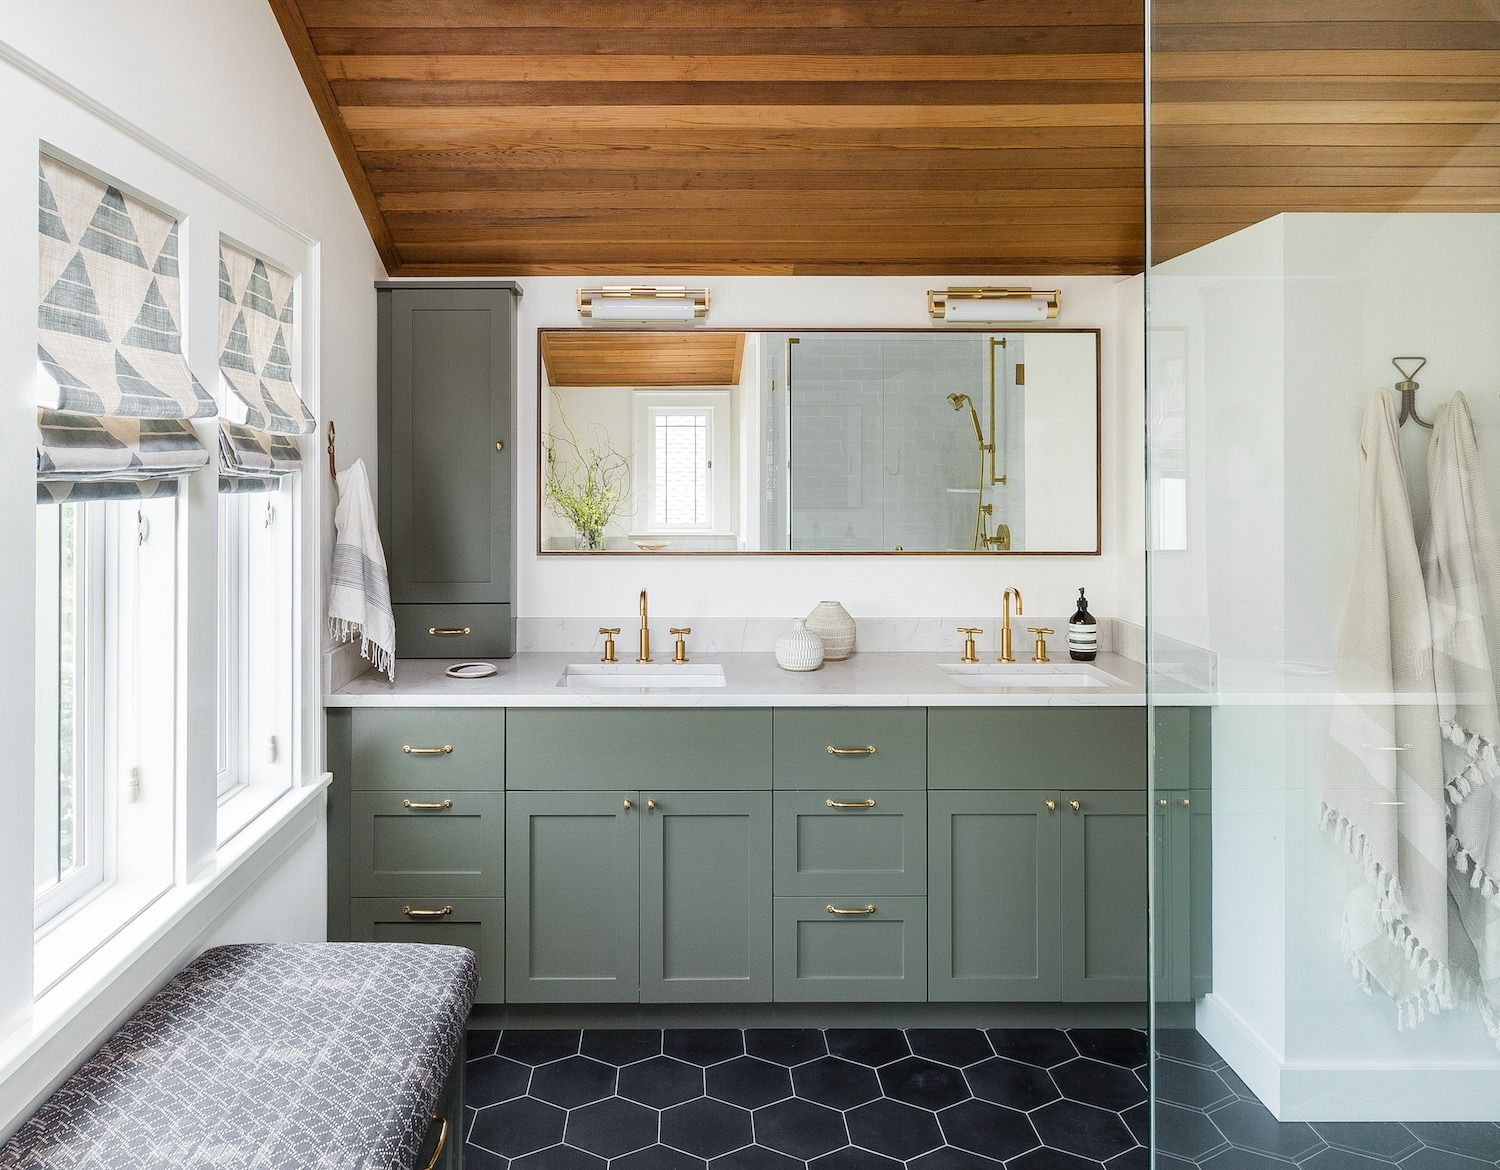 27 Bathroom Mirror Ideas For Every Style - Bathroom Wall Decor